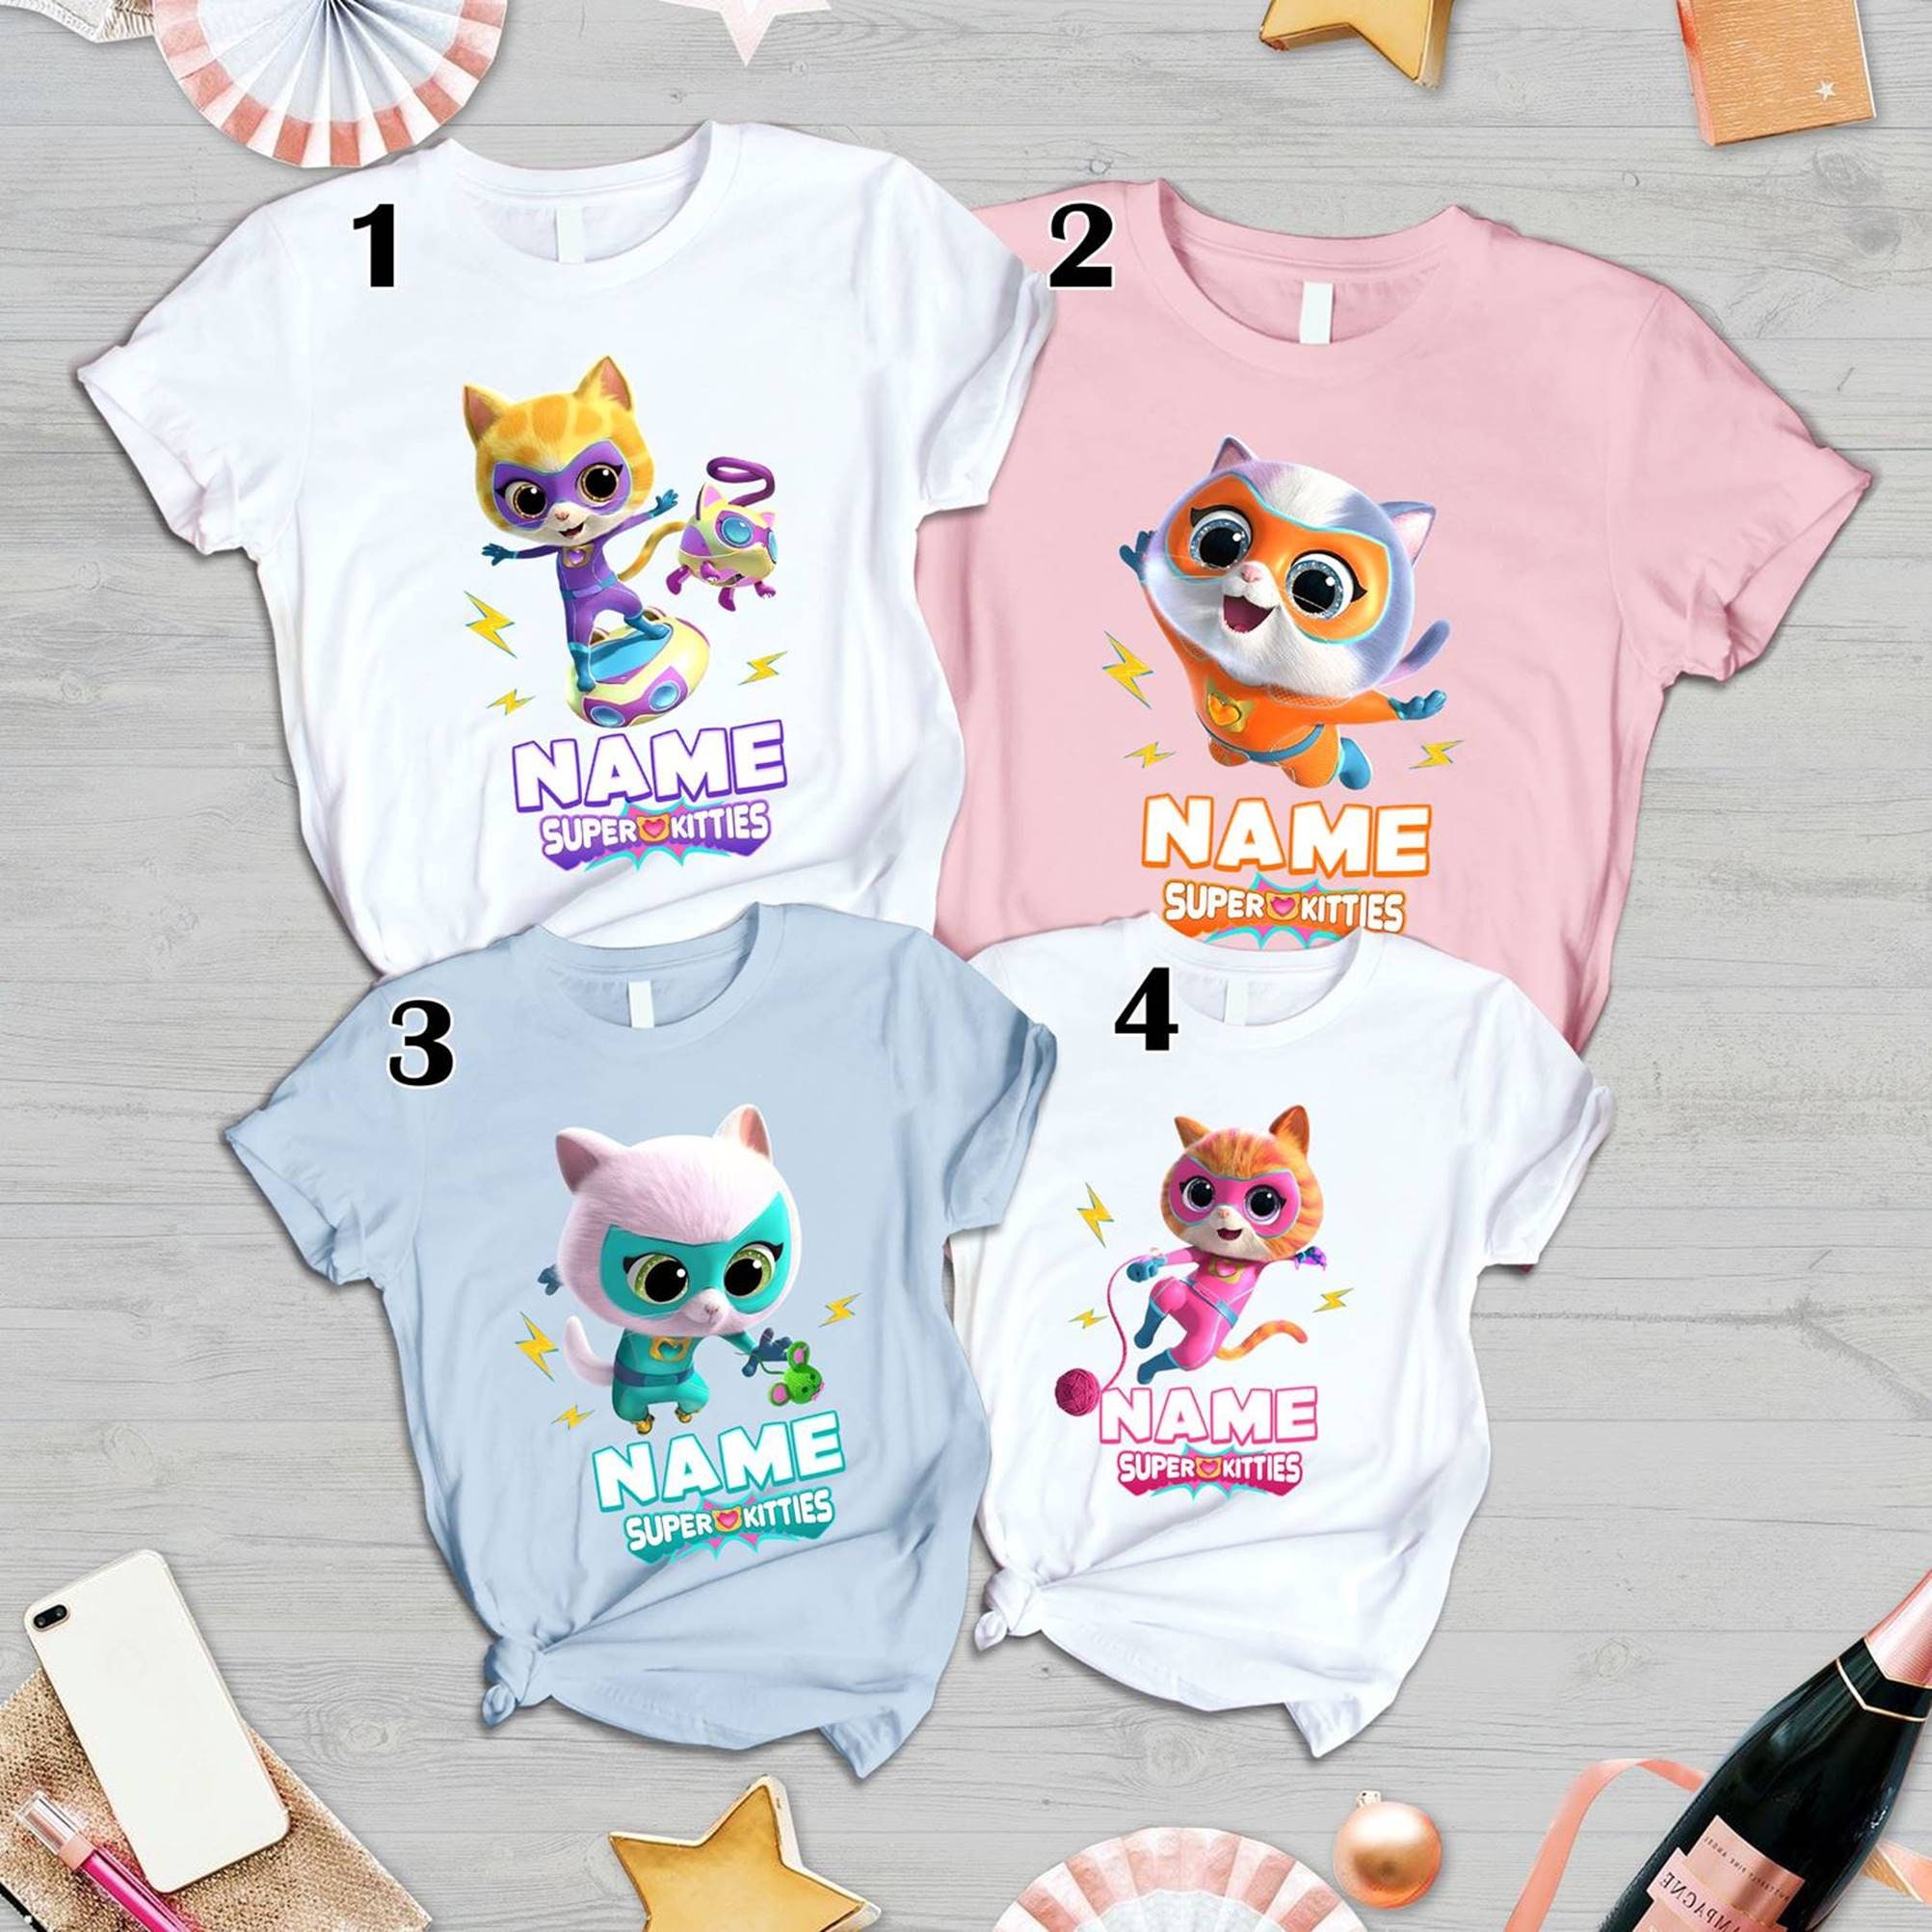 SuperKitties Birthday Shirt, Super Kitties Custom Birthday S - Inspire  Uplift